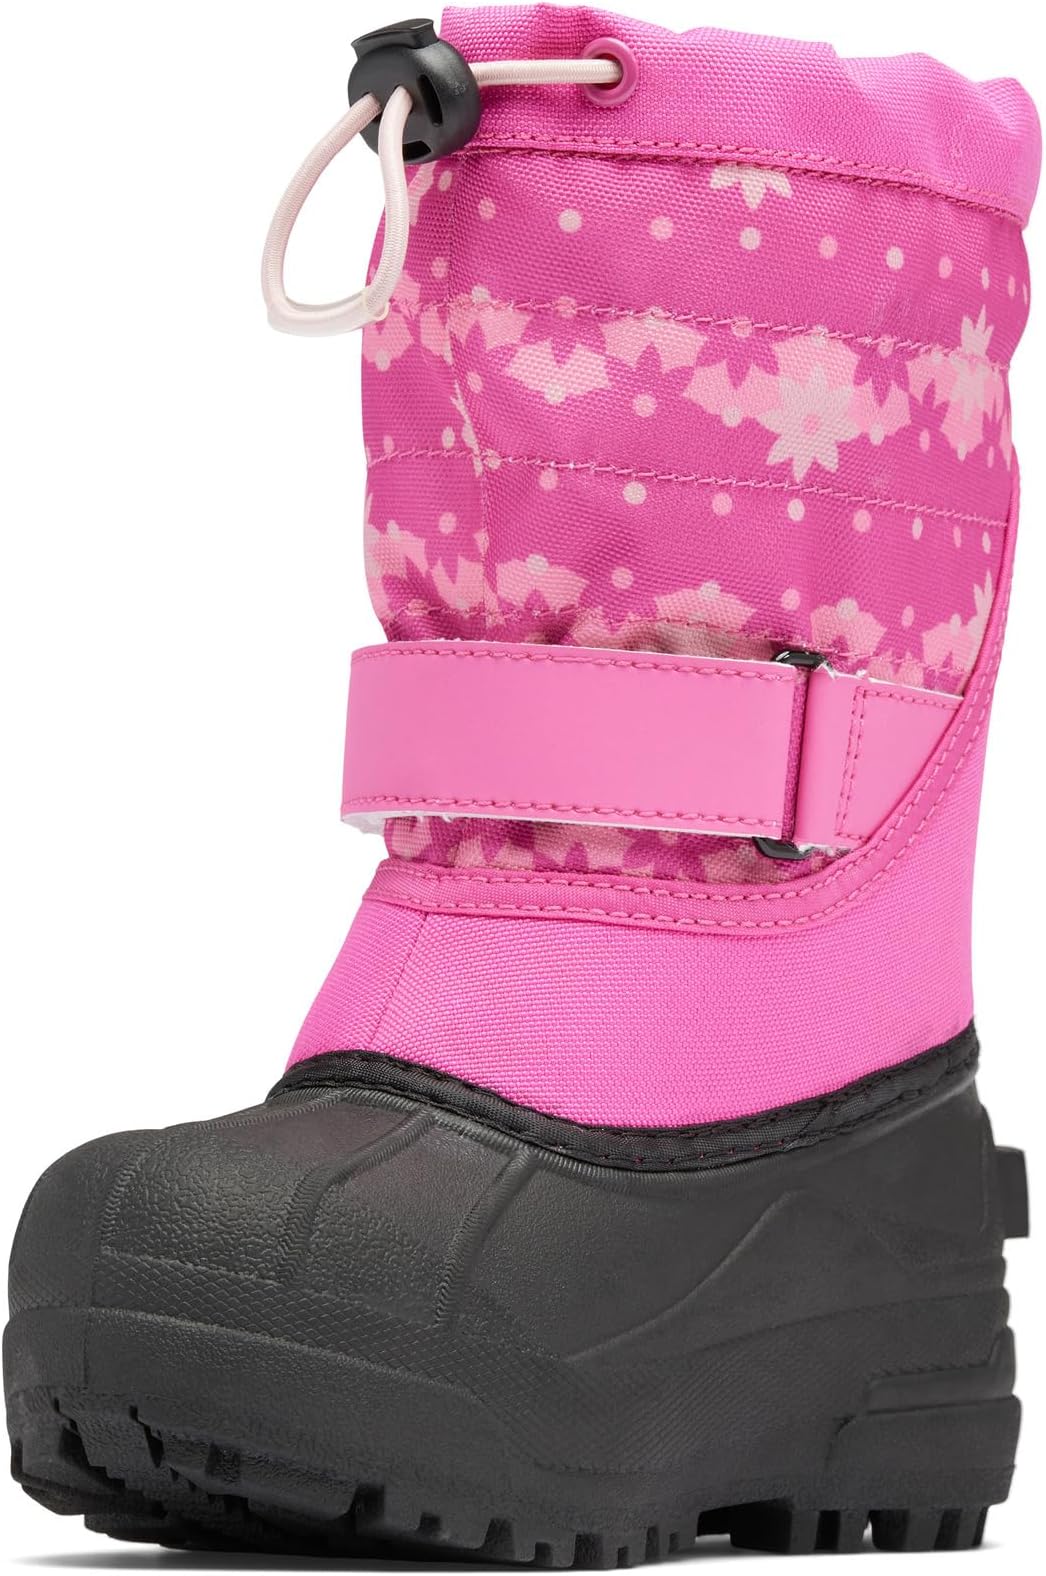 Зимние ботинки Powderbug Plus II Print Columbia, цвет Pink Ice/Dusty Pink brabantia ice cream scoop pink